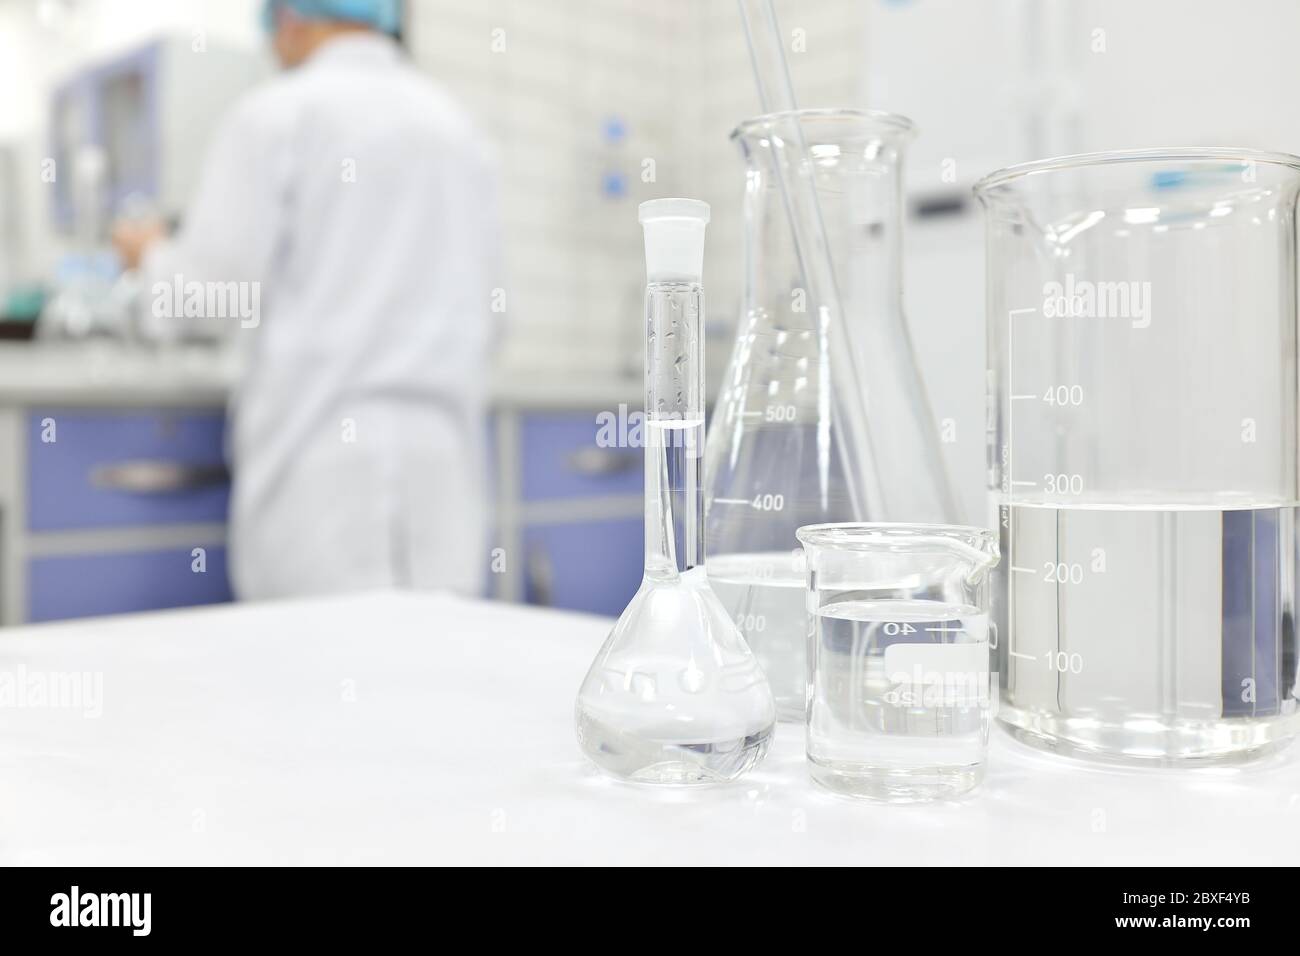 Blur-Wissenschaftler, der in einem Chemistry Science-Labor mit Kolben, Becher und Glaswaren arbeitet, die klare flüssige Chemikalien enthalten. Stockfoto